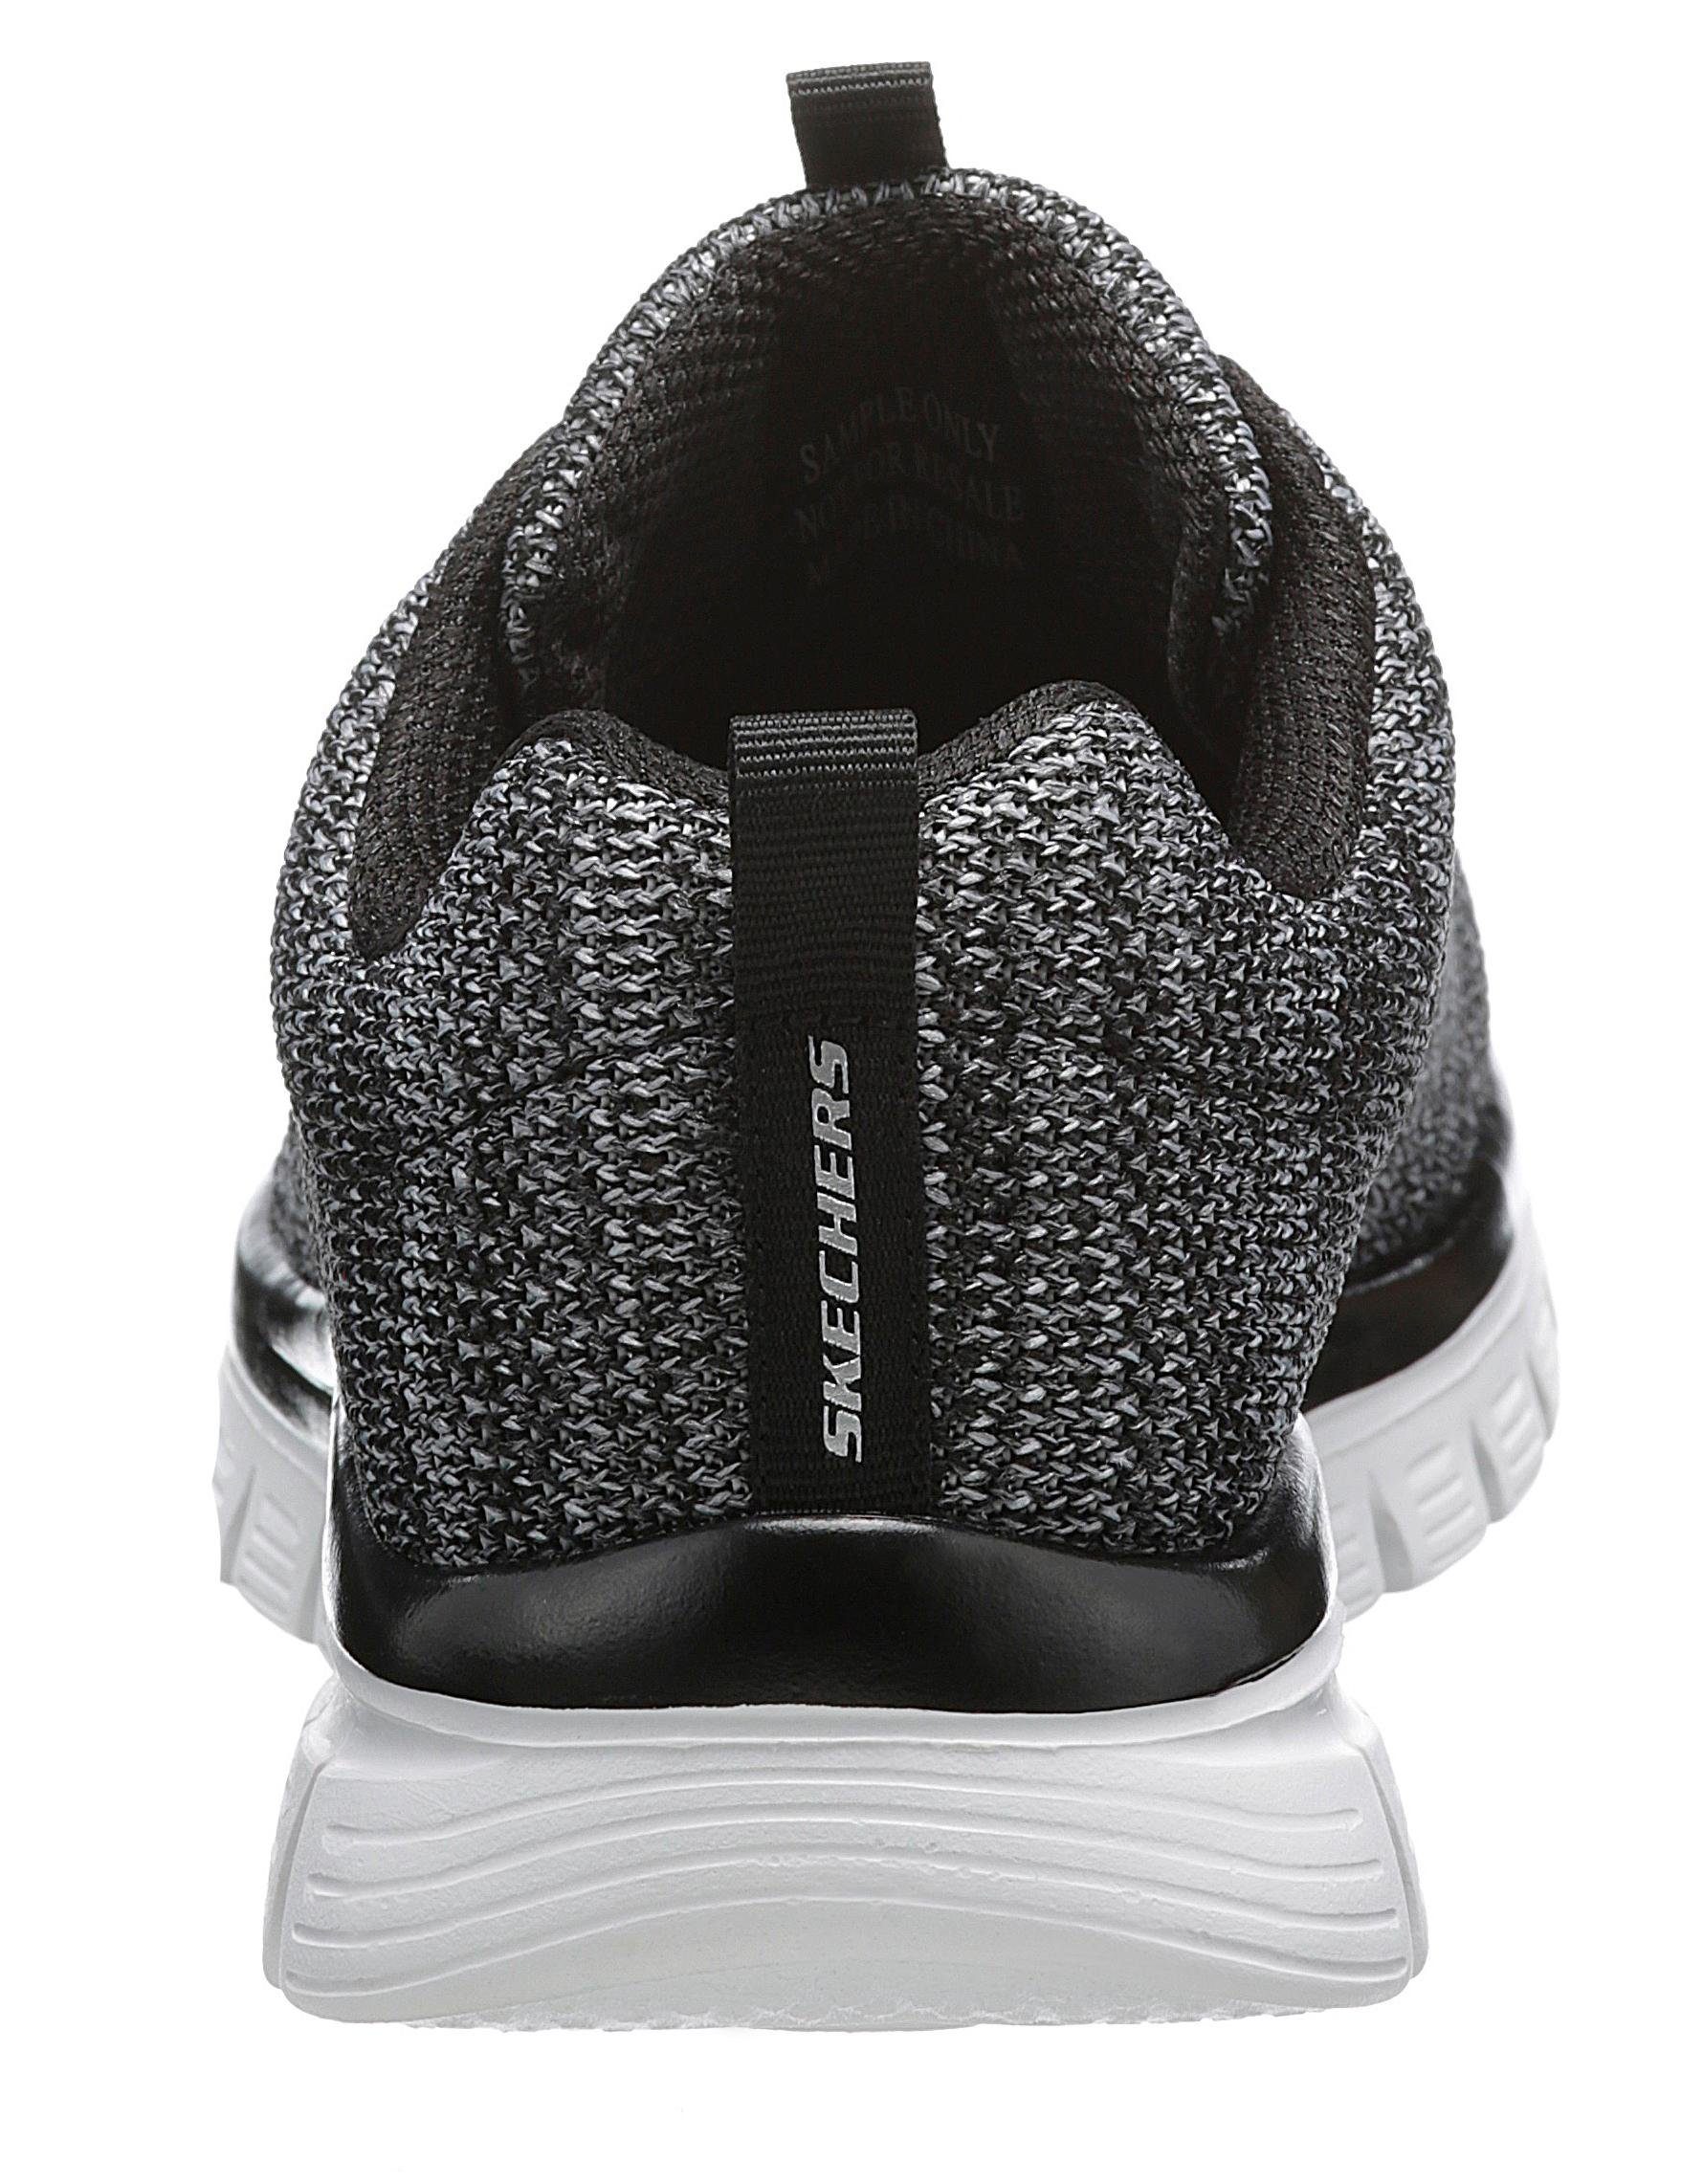 mit schwarz-weiß Twisted Graceful Skechers Fortune Memory Foam Sneaker -